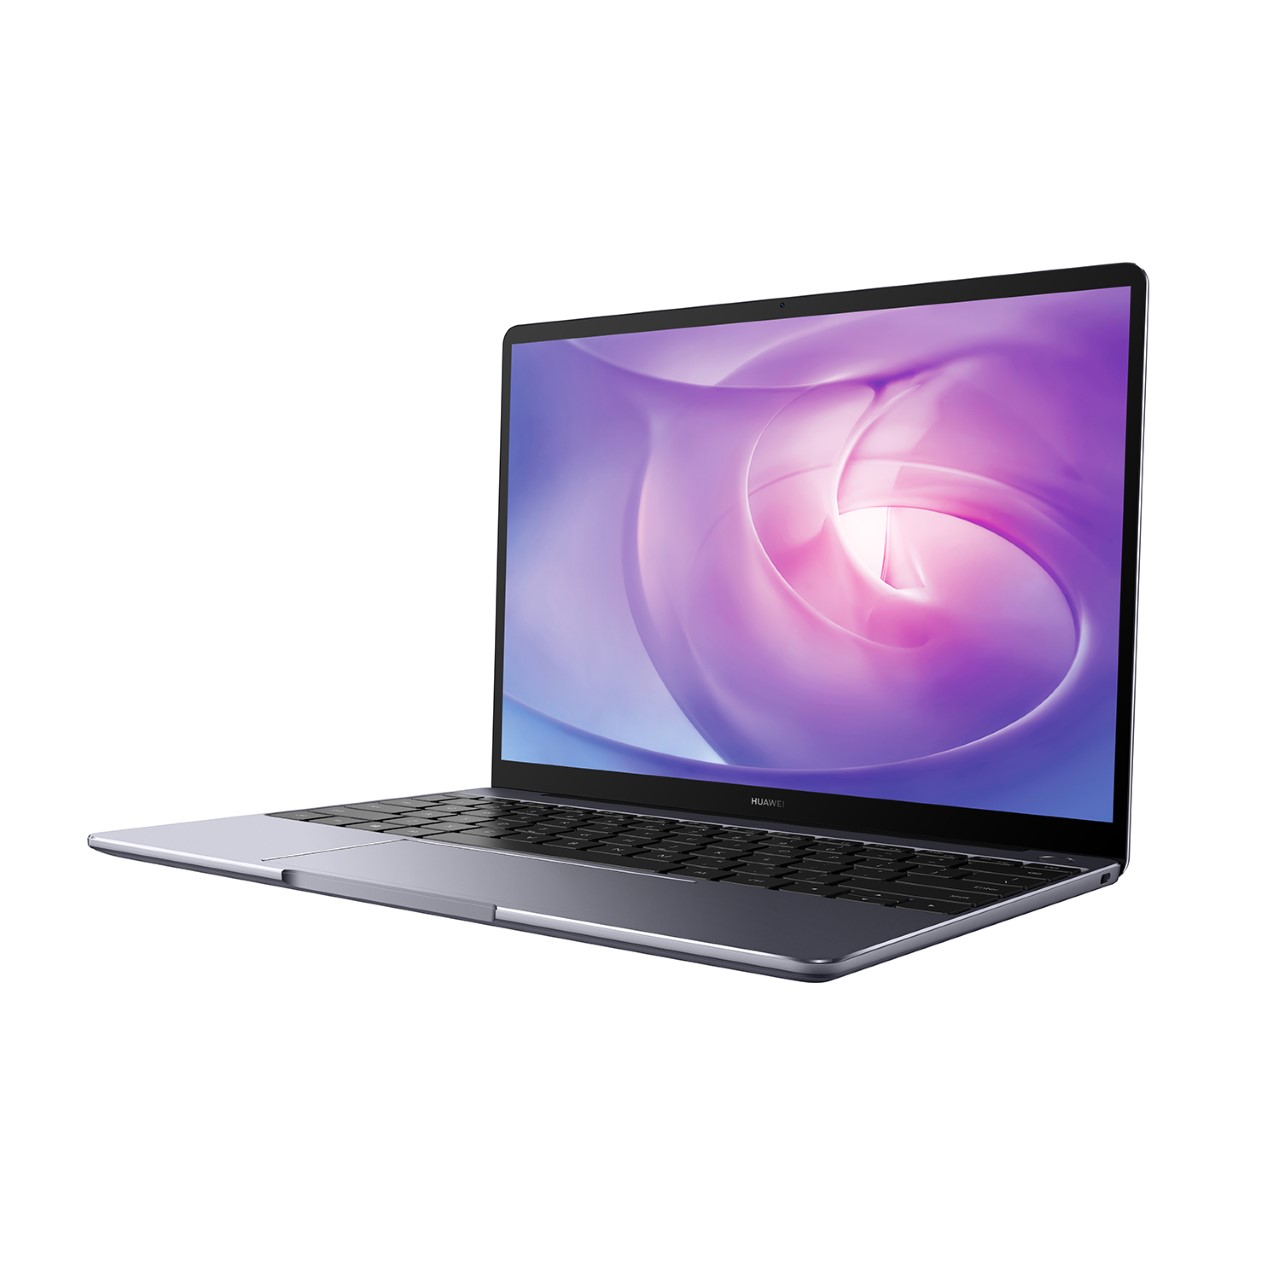 حاسوب HUAWEI MateBook 13 يأتي مزوداً بأربع مزايا ذكية وأنيقة من أجل حياة رقمية أكثر اتصالاً وكفاءة